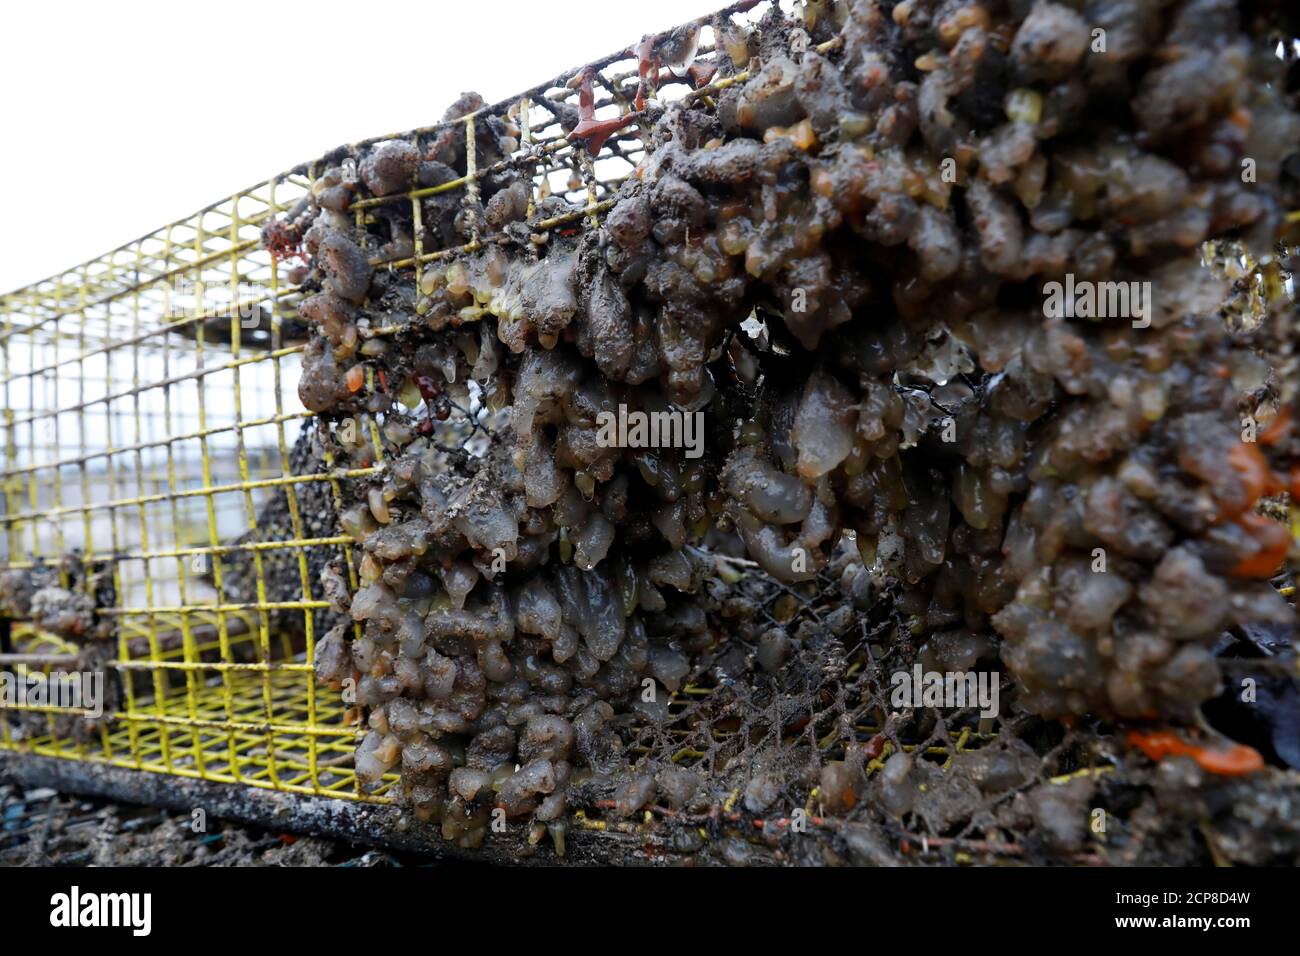 Sea Squirts, un invasivo invertebrato marino, aggrapparsi alle trappole di aragosta a Stonington, Maine, Stati Uniti, 14 novembre 2017. Foto scattata il 14 novembre 2017. Per abbinare Special Report OCEANS-TIDE/LOBSTER REUTERS/Shannon Stapleton Foto Stock